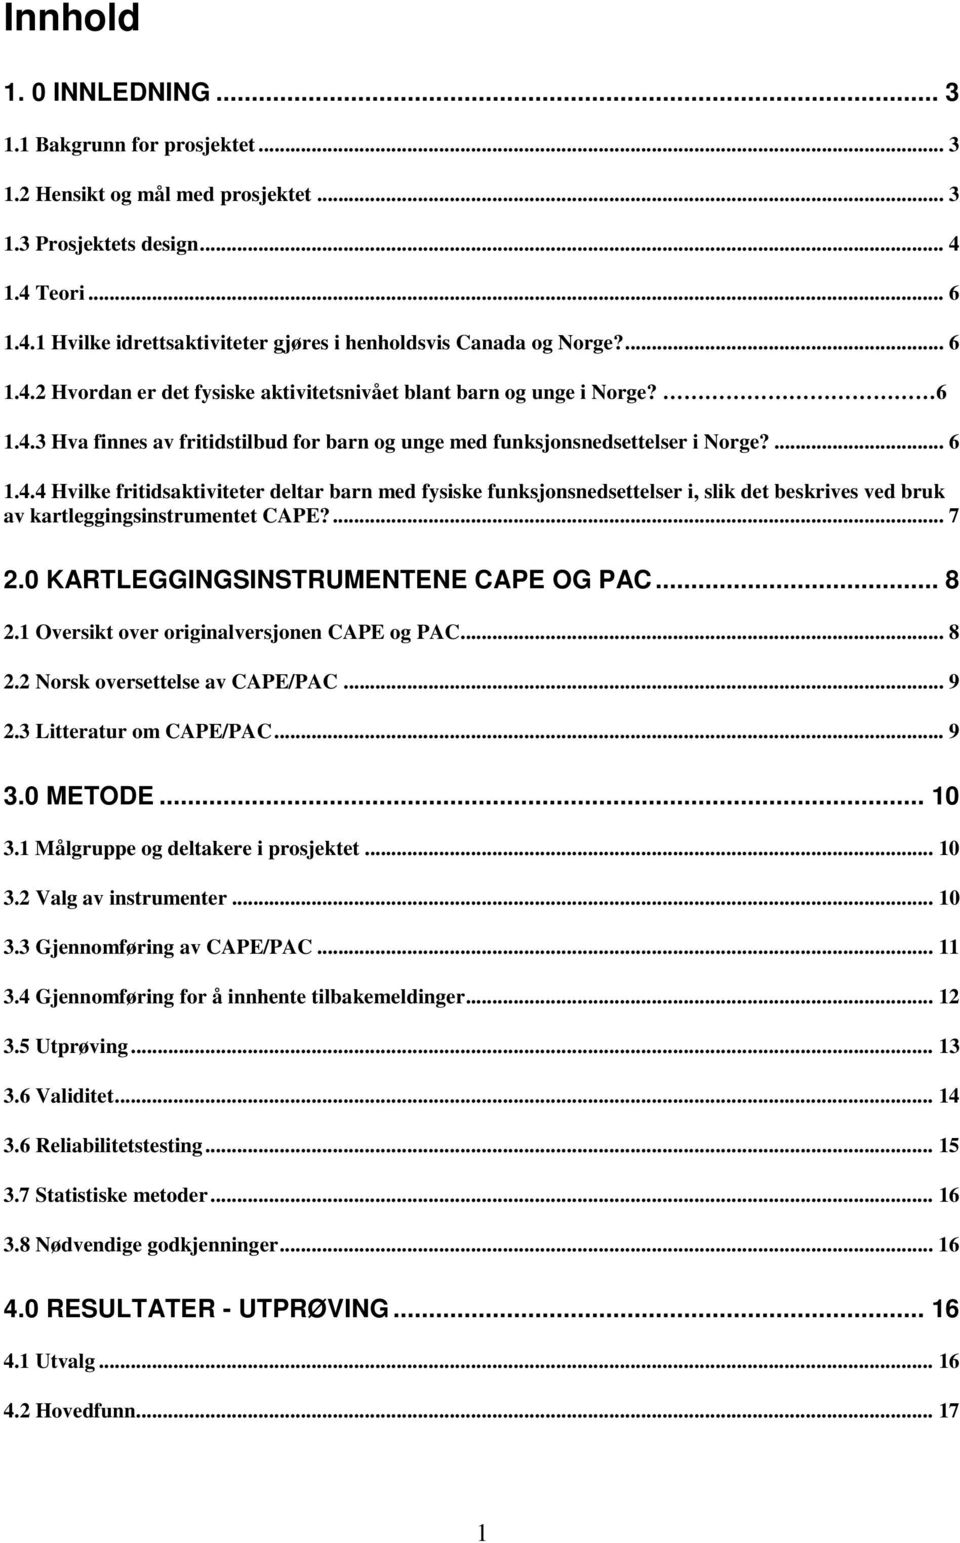 ... 7 2.0 KARTLEGGINGSINSTRUMENTENE CAPE OG PAC... 8 2.1 Oversikt over originalversjonen CAPE og PAC... 8 2.2 Norsk oversettelse av CAPE/PAC... 9 2.3 Litteratur om CAPE/PAC... 9 3.0 METODE... 10 3.